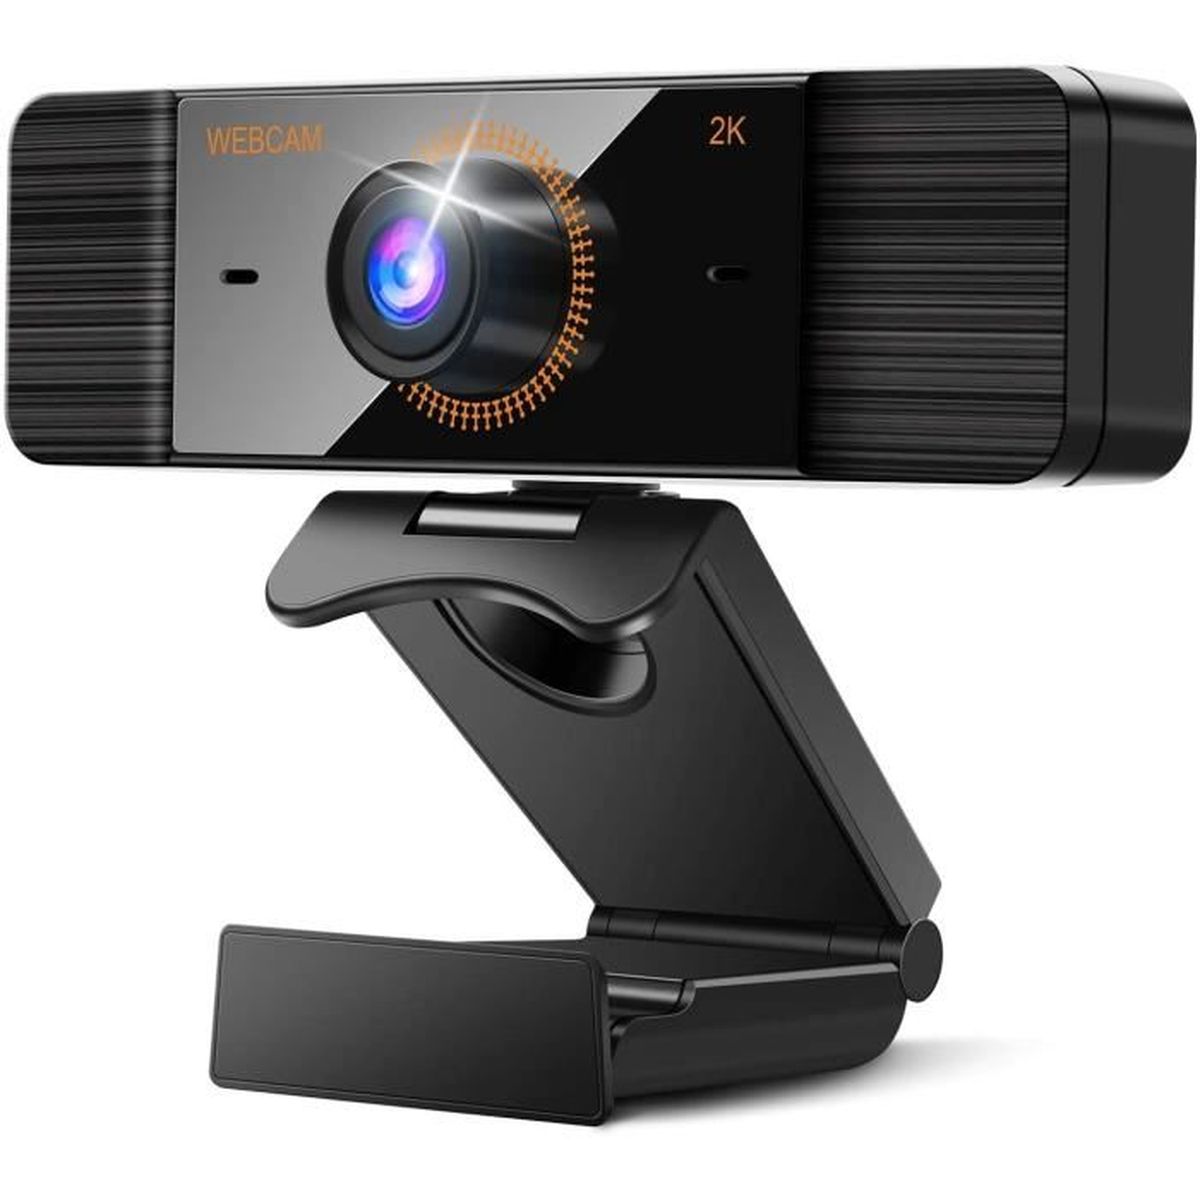 Studios Conférences et Enregistrement Compatible avec Windows Mac et Android 2K Webcam pour PC avec Microphone Stéréo 1440P Caméra Web USB avec Auto Focus pour PC Vidéoconférence 